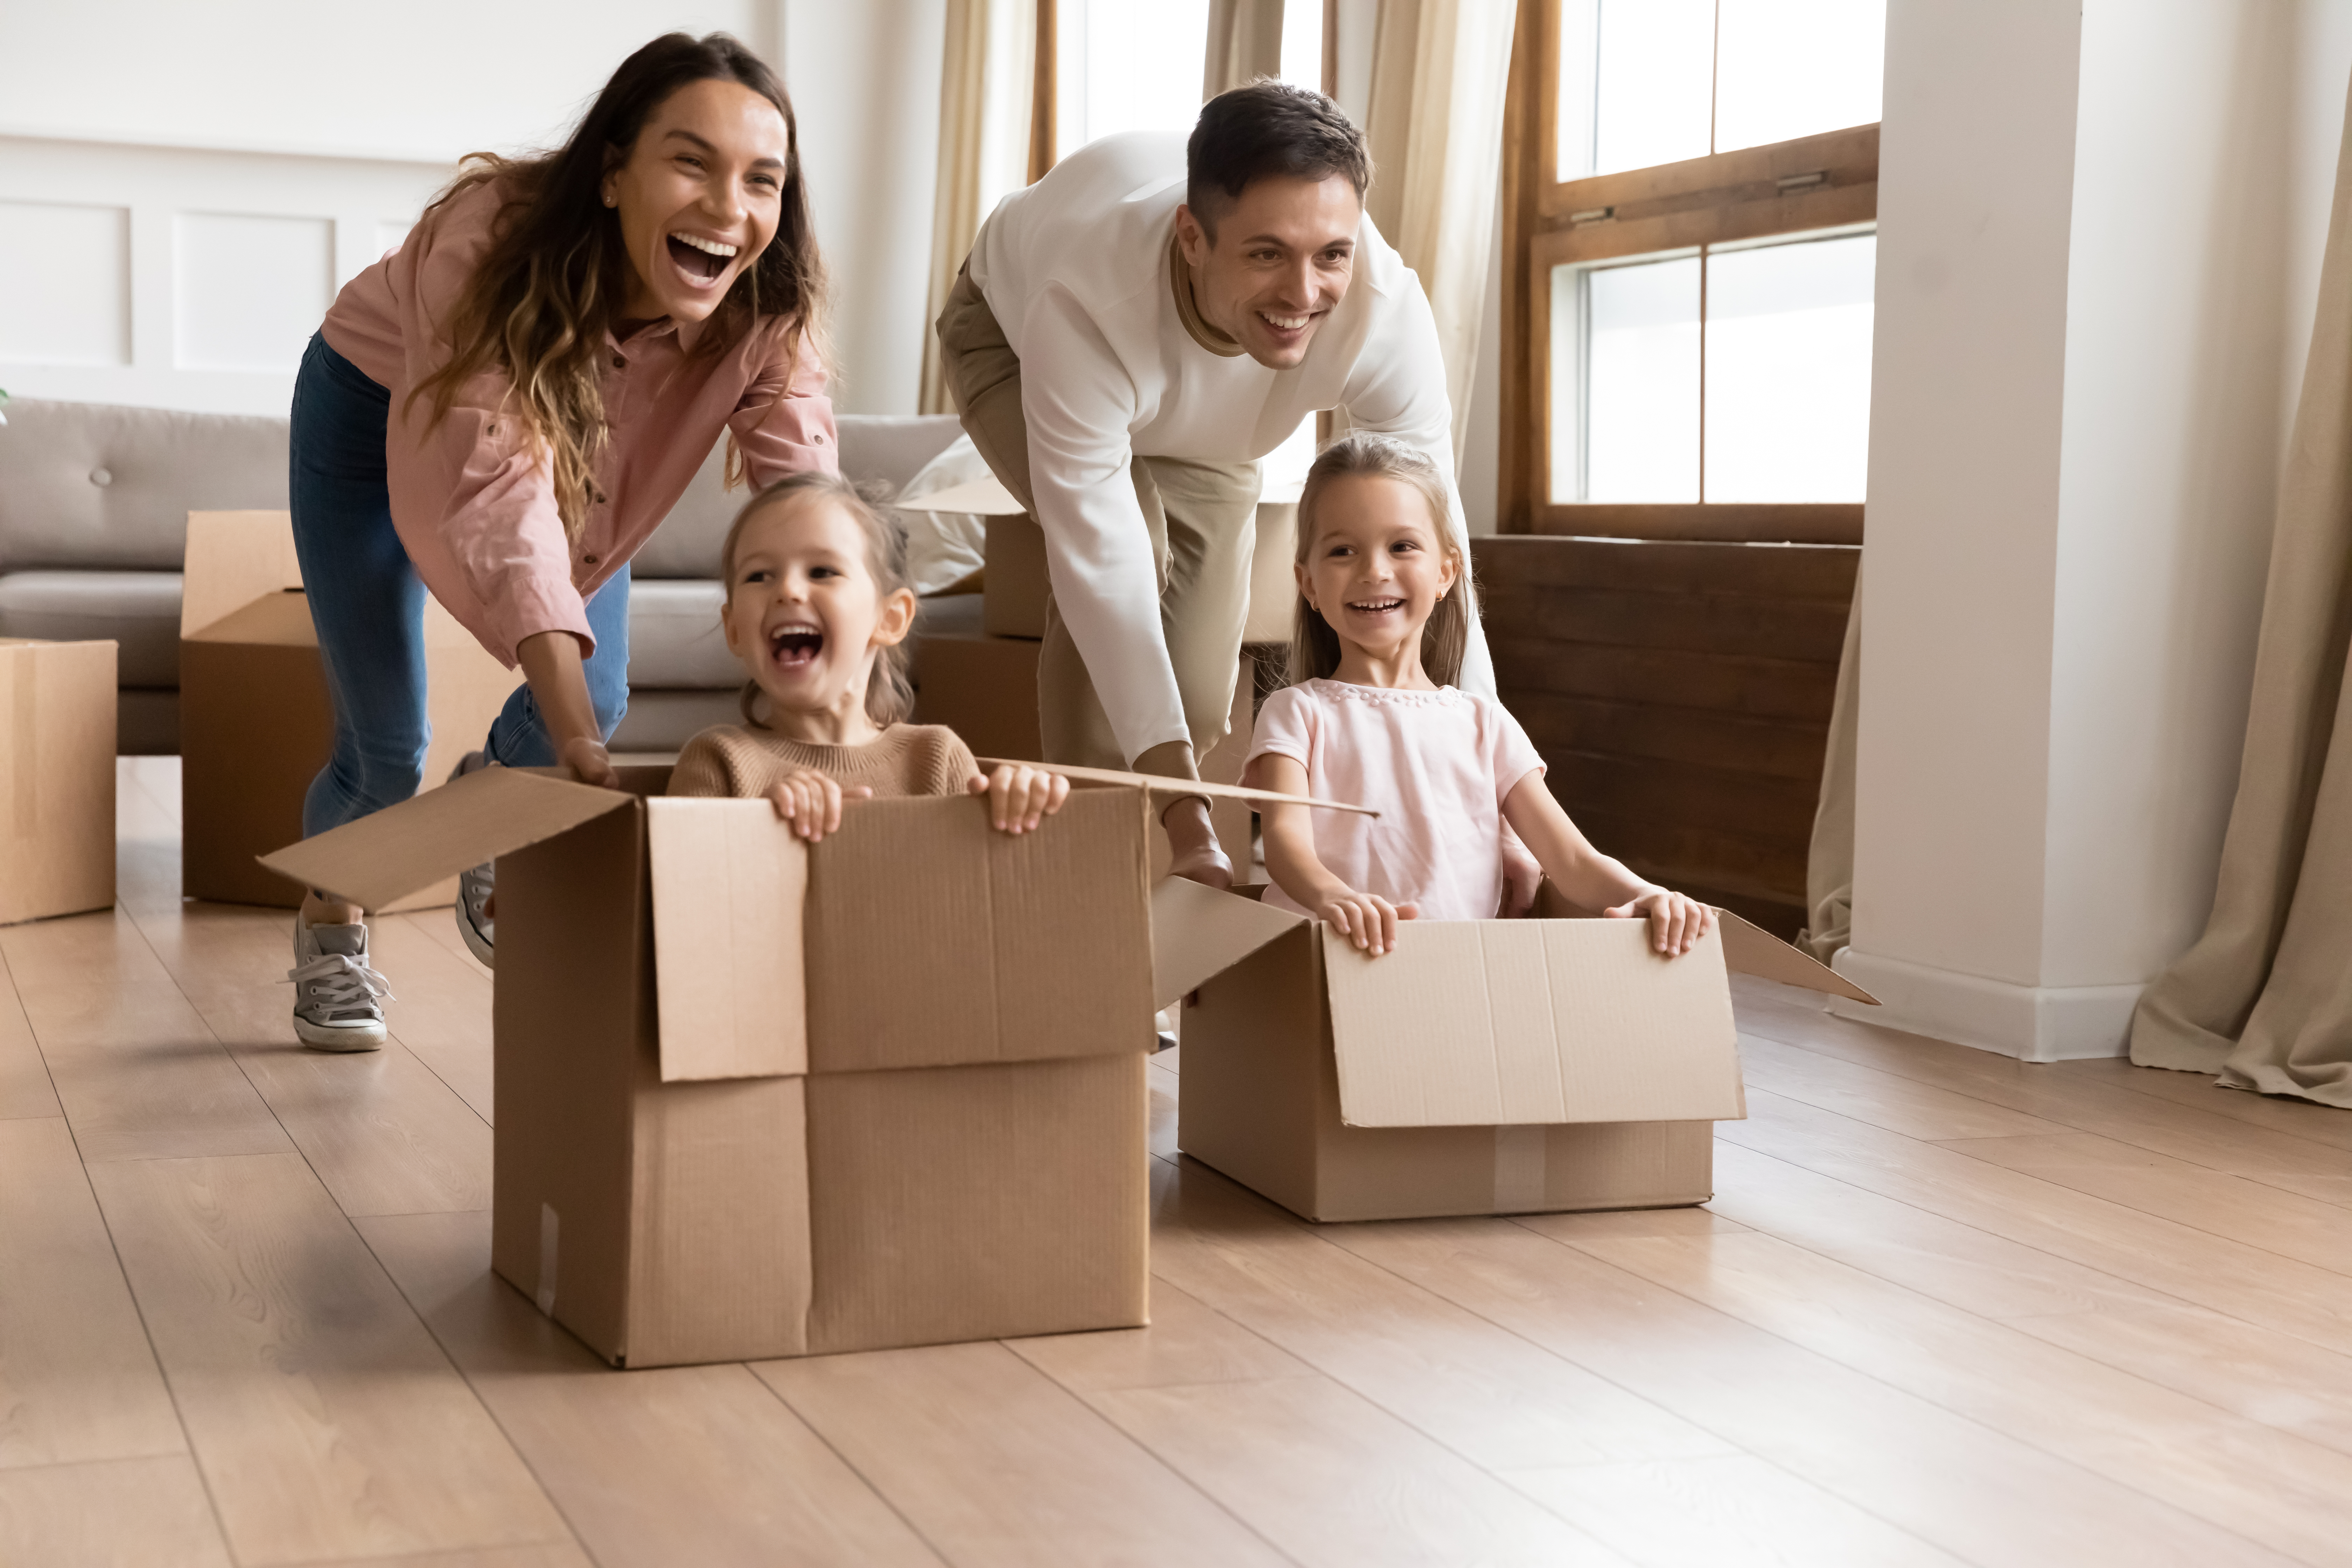 Des parents heureux jouent avec leurs enfants dans leur salon | Source : Shutterstock